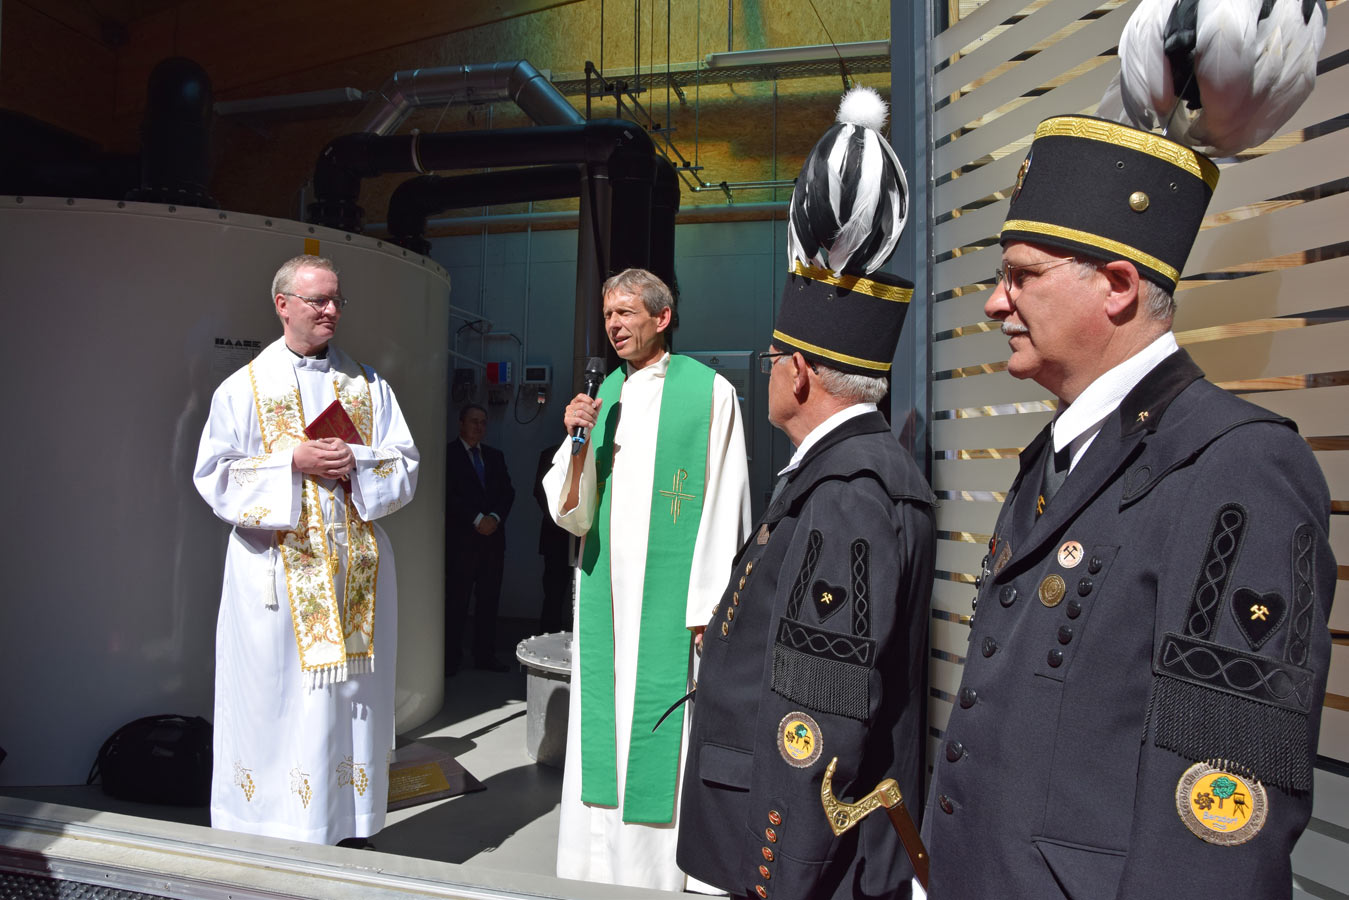 Ein Mann mit einem Mikrofon und einer Tscherpe steht in der Mitte des Bildes, ein Mann mit einer Bischofsuniform steht nehmen ihm genauso wie zwei Männer in traditionellen Uniformen